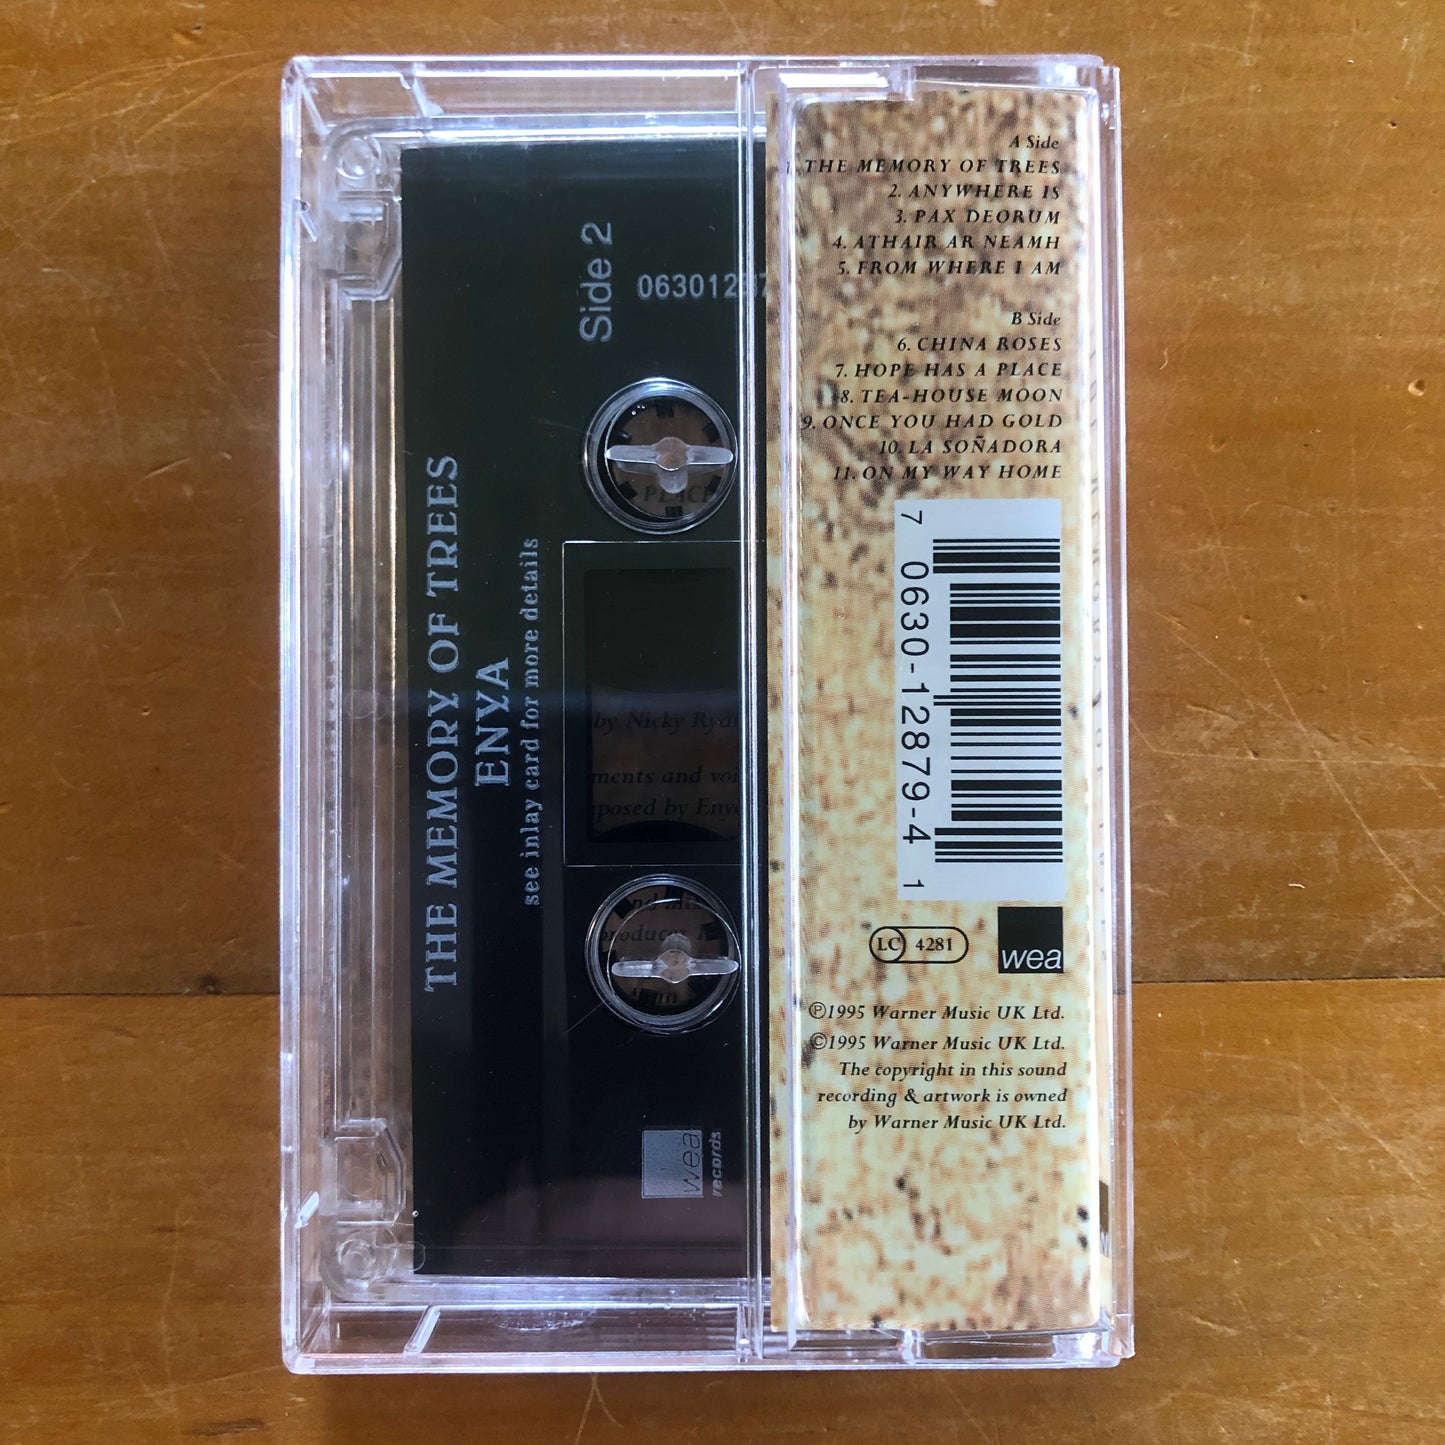 Enya - The Memory Of Trees (cassette)